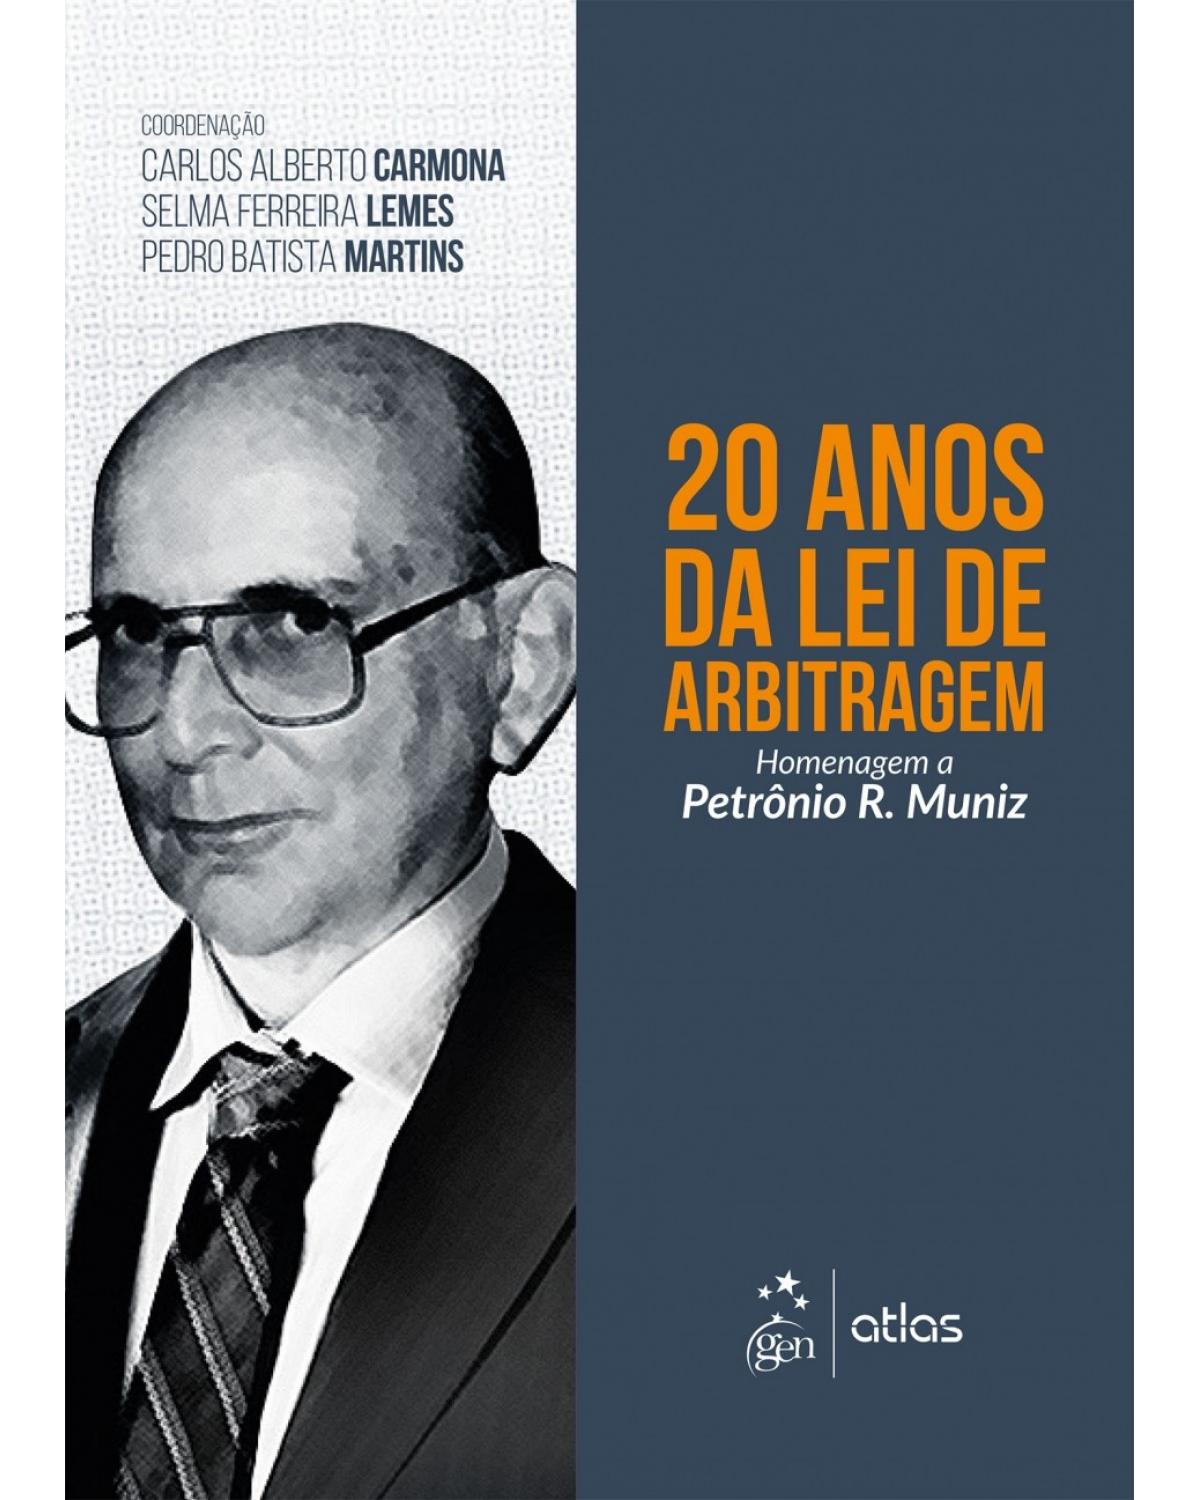 20 anos da lei de arbitragem - Homenagem a Petrônio R. Muniz - 1ª Edição | 2017